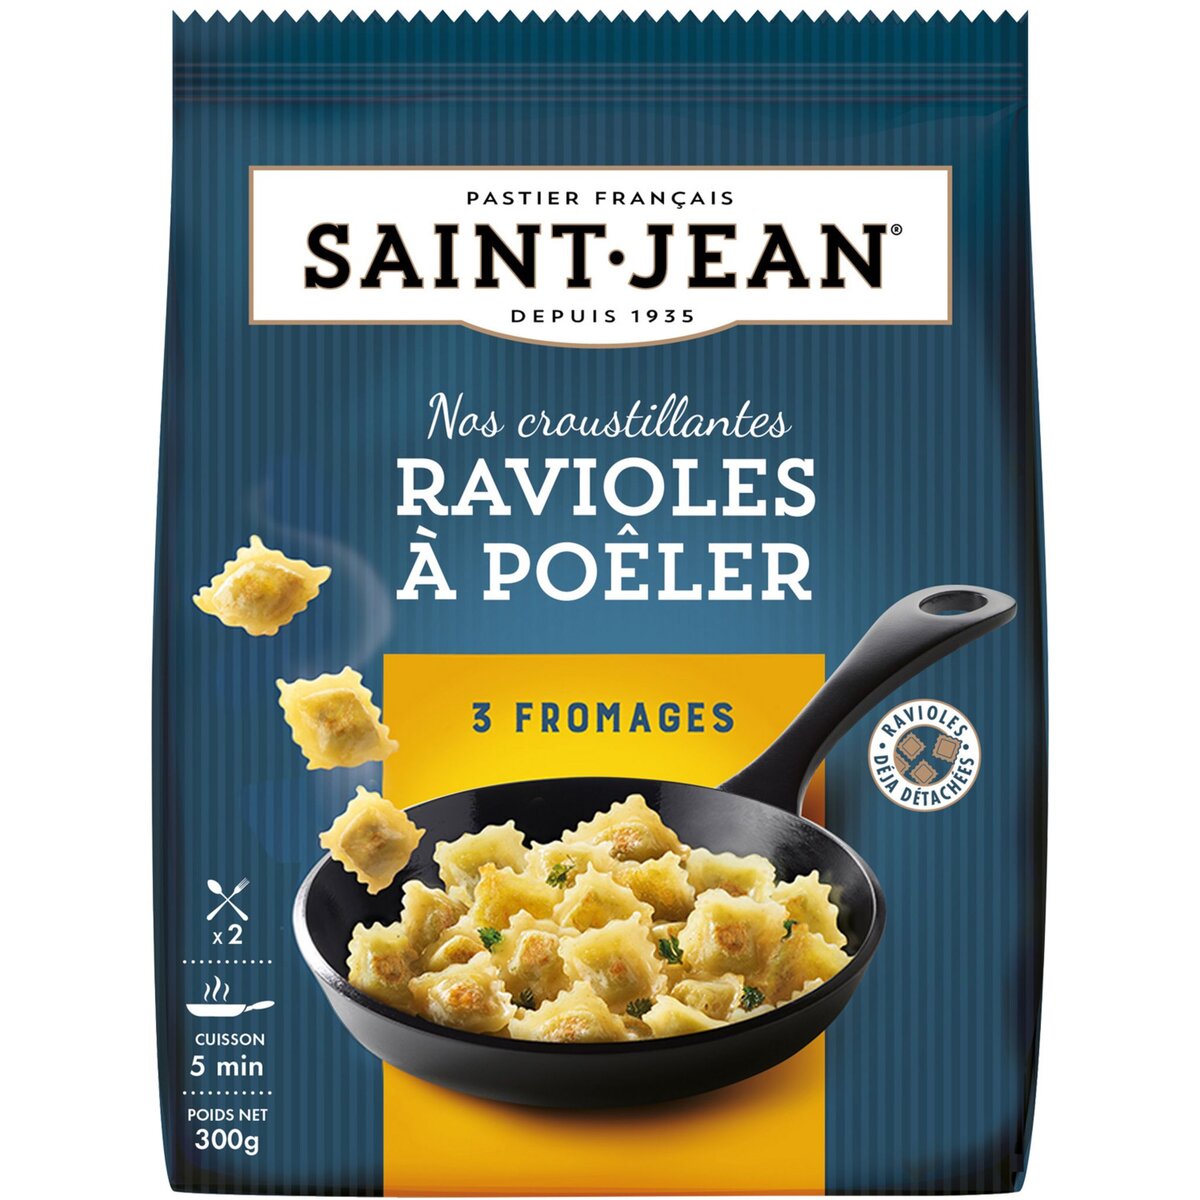 SAINT JEAN Ravioles à poêler aux 3 fromages 2 portions 300g